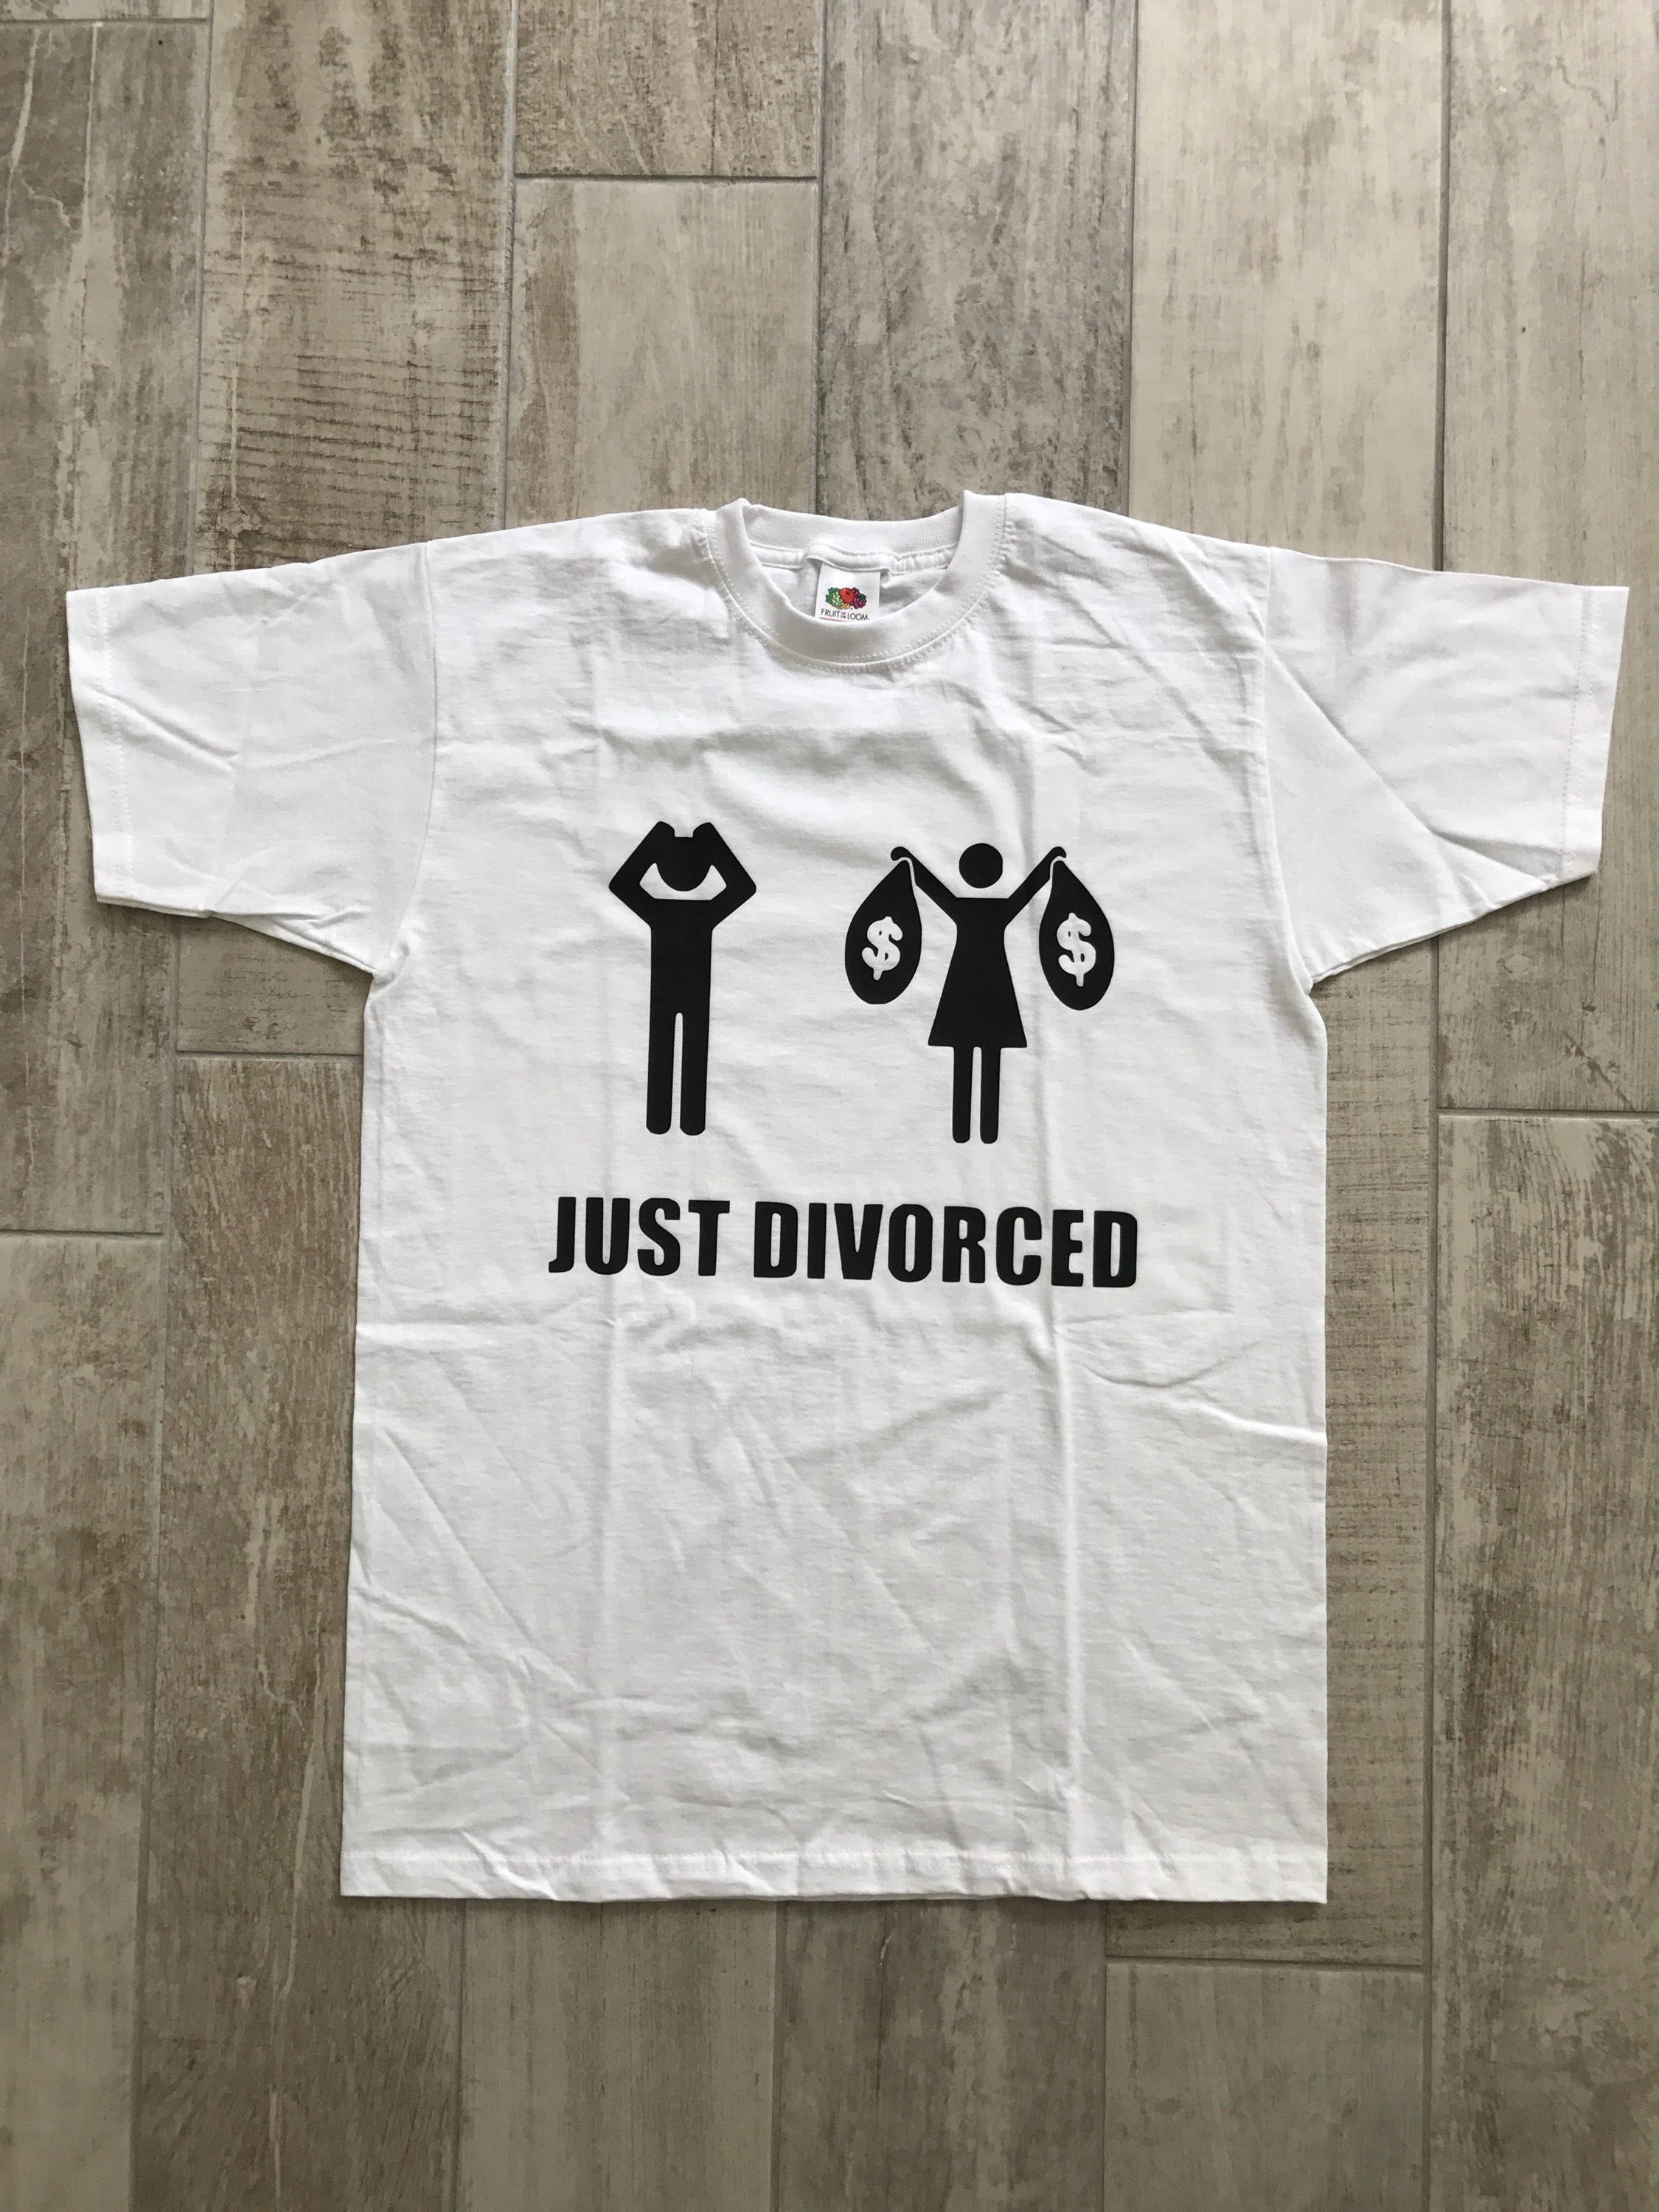 T-shirt - Libérée. Délivrée. Divorcée.